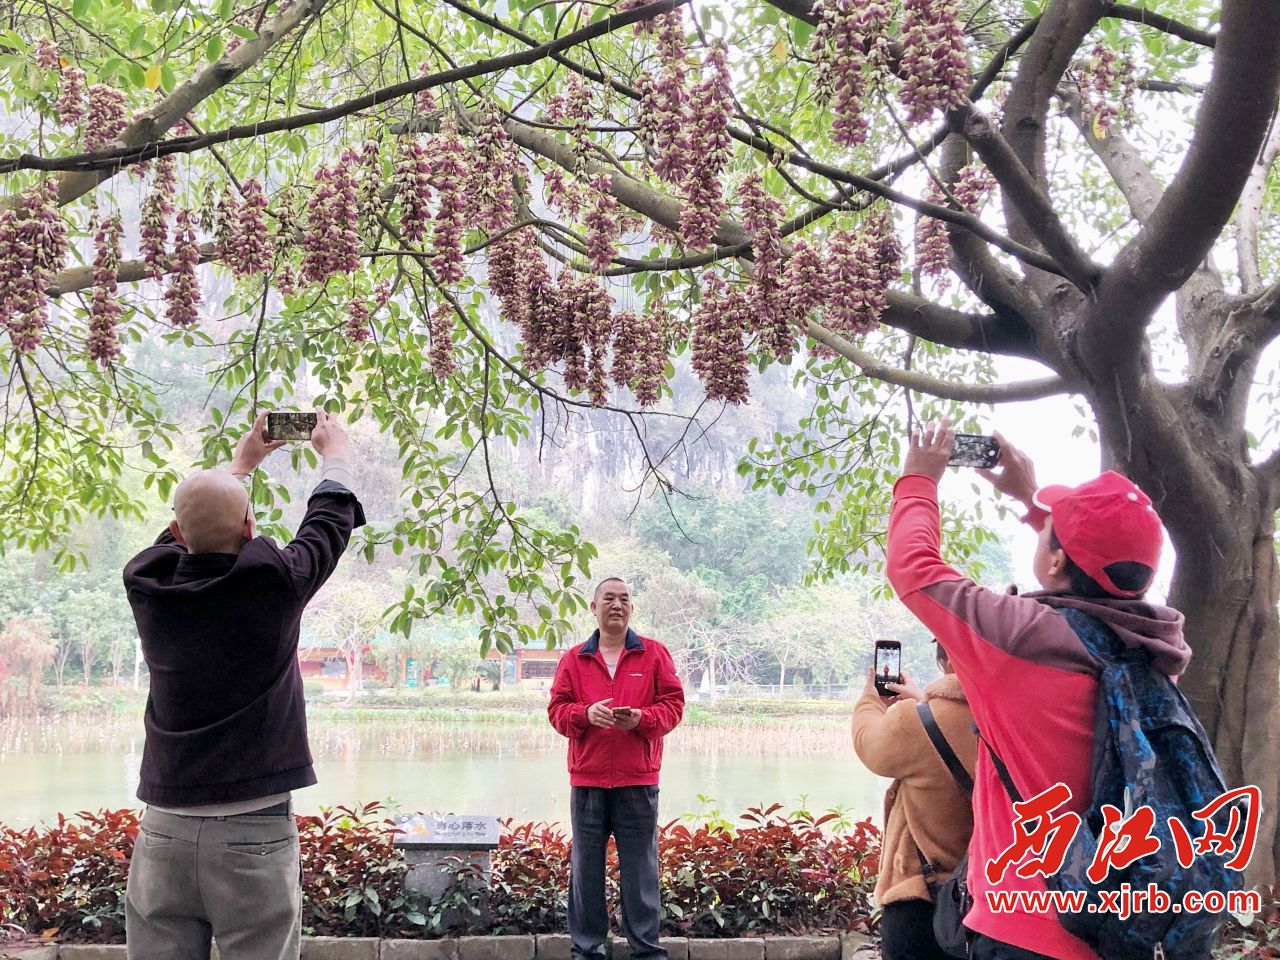 市民和游客纷纷举起手中手机与禾雀花拍照留念。杨乐祺摄